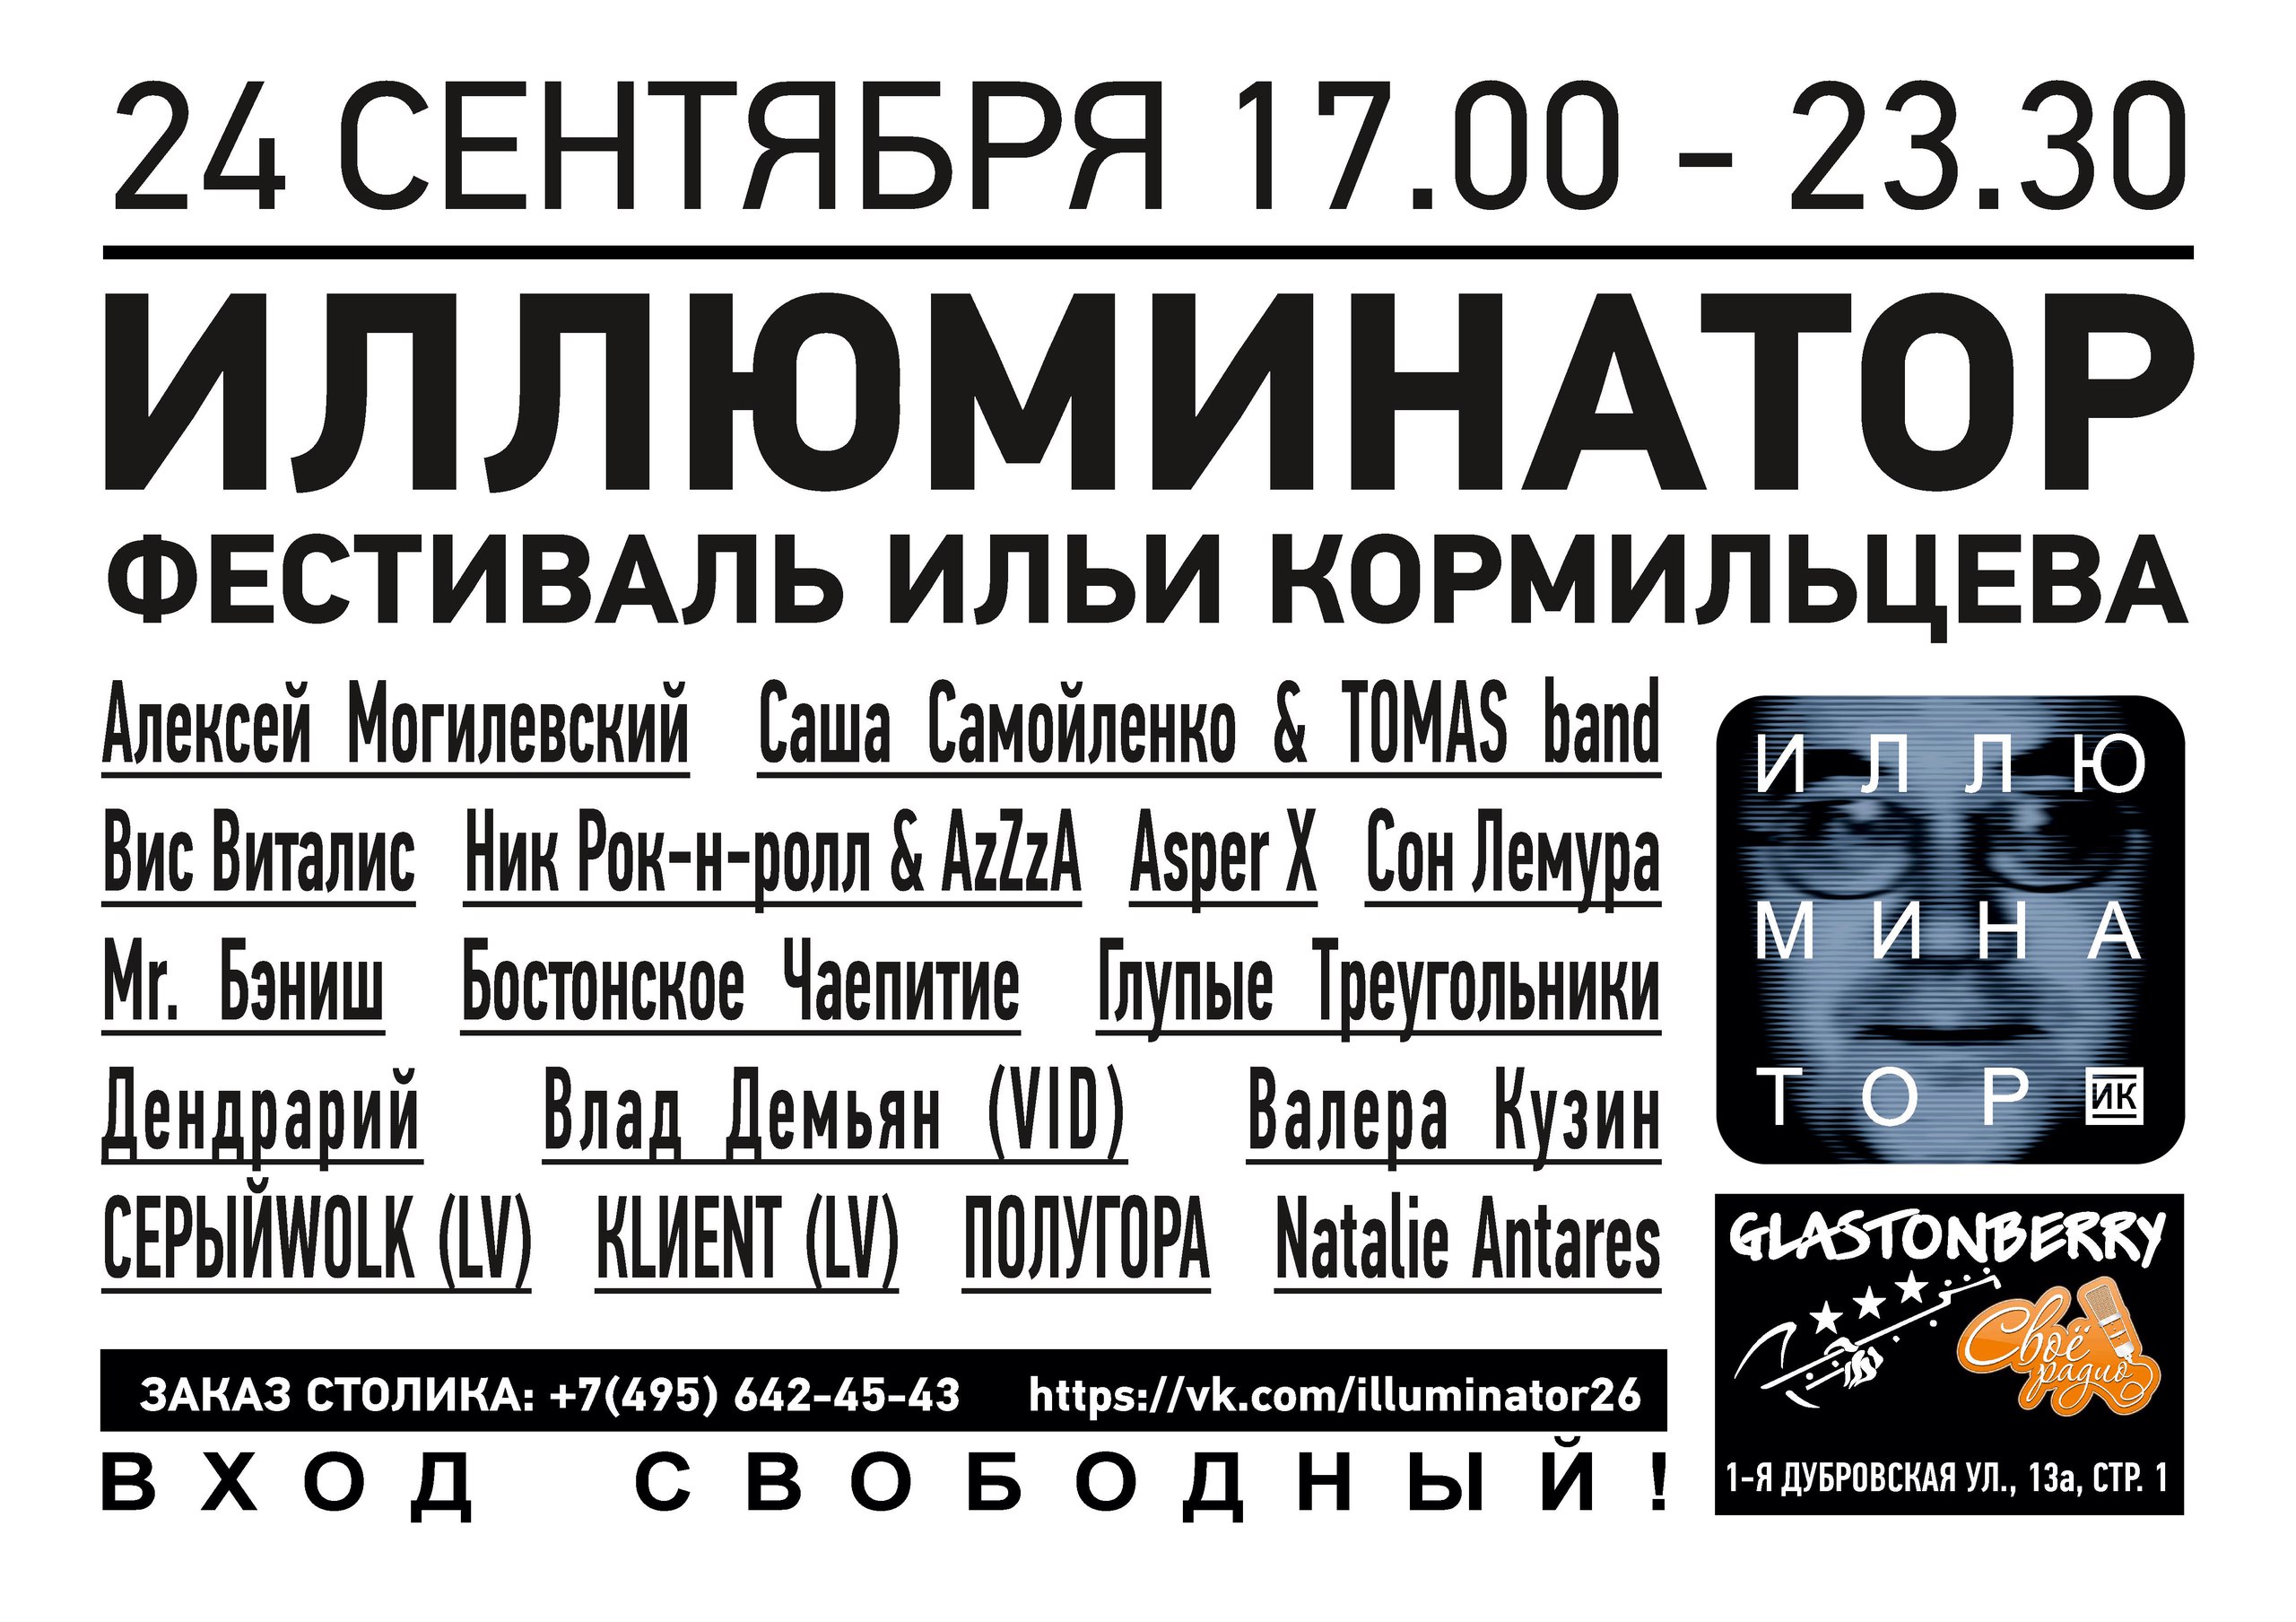 Фестиваль «Иллюминатор» приглашает почитателей таланта Ильи Кормильцева